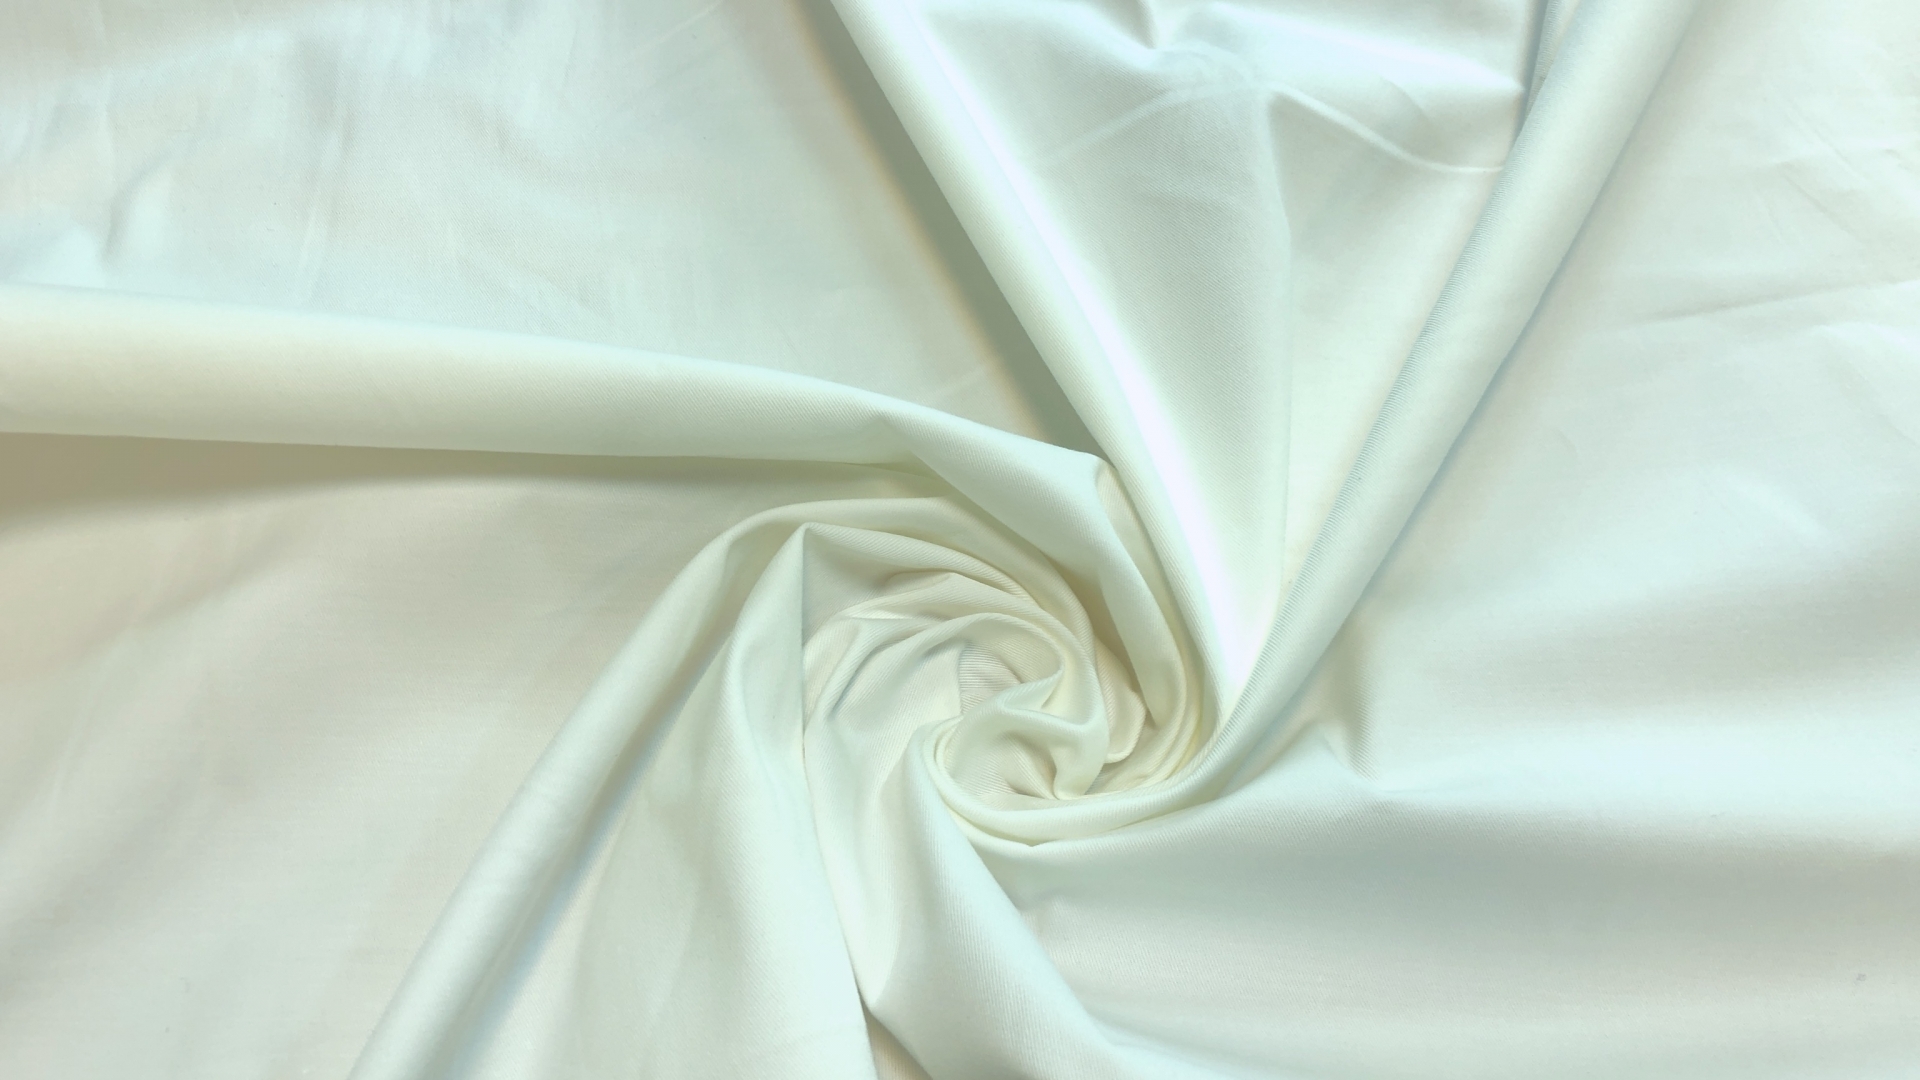 Сток итальянских фабрик! Великолепный хлопковый габардин с эластаном. Мелкая диагональ, поверхность гладкая, лощёная. Идеален для летних костюмов, брюк, спортивных юбок и пиджаков. Цвет белый.